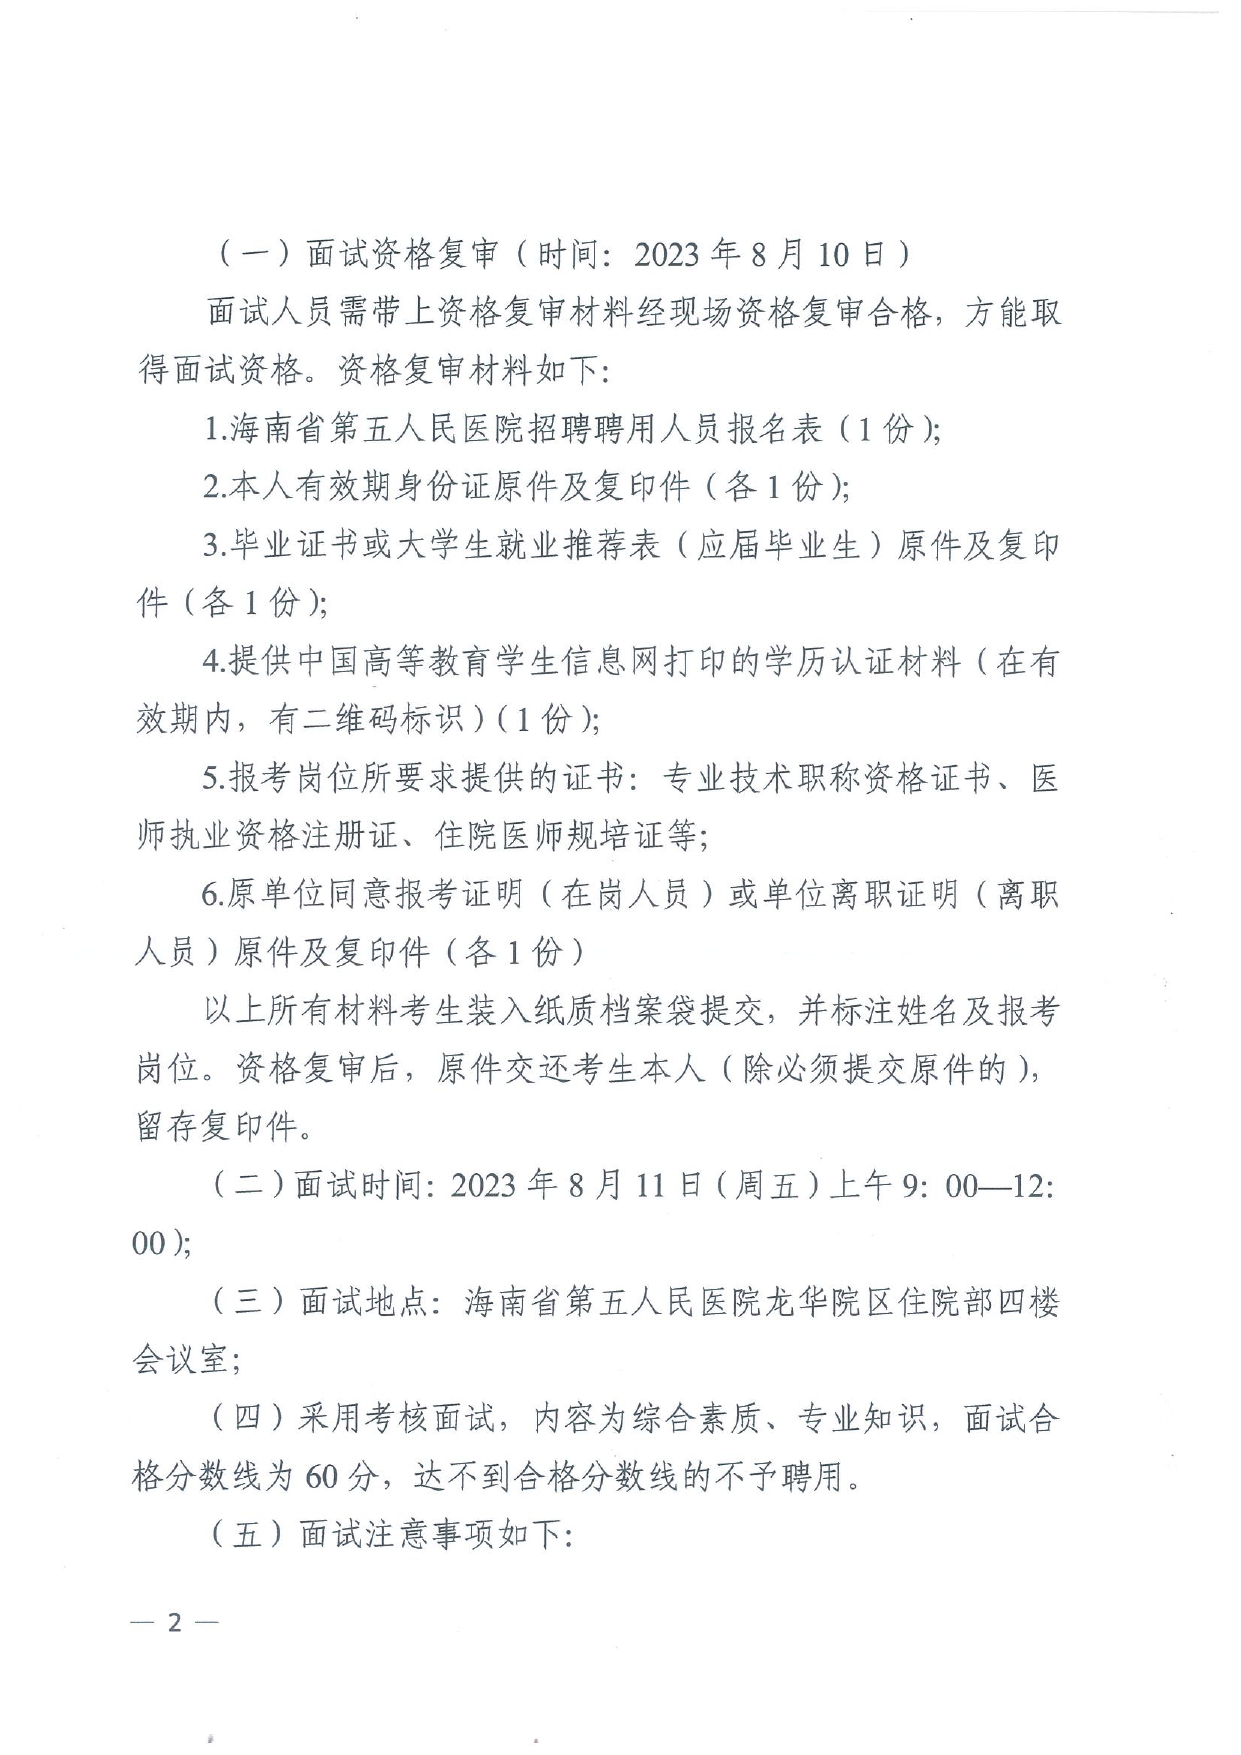 海南省第五人民医院2023年公开招聘工作人员面试公告_page-0002.jpg